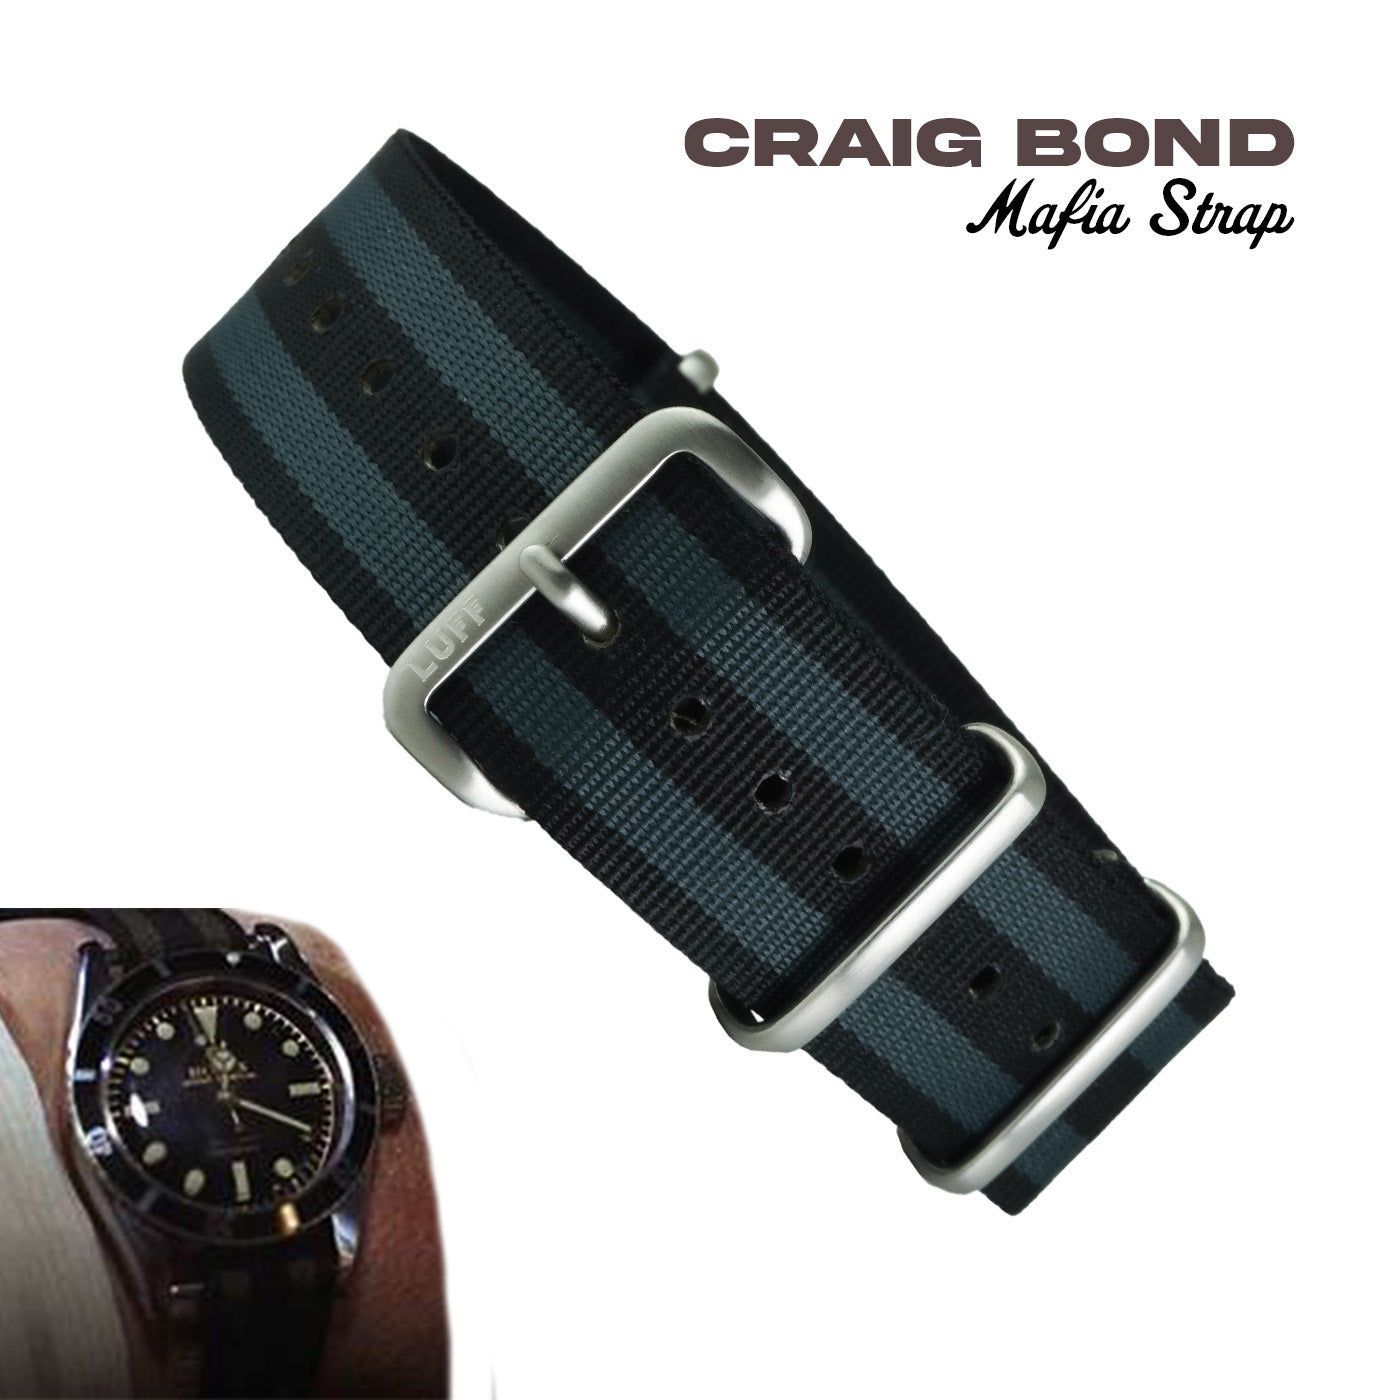 Craig Bond 18mm/20mm - Mafia Strap (4291854073943)